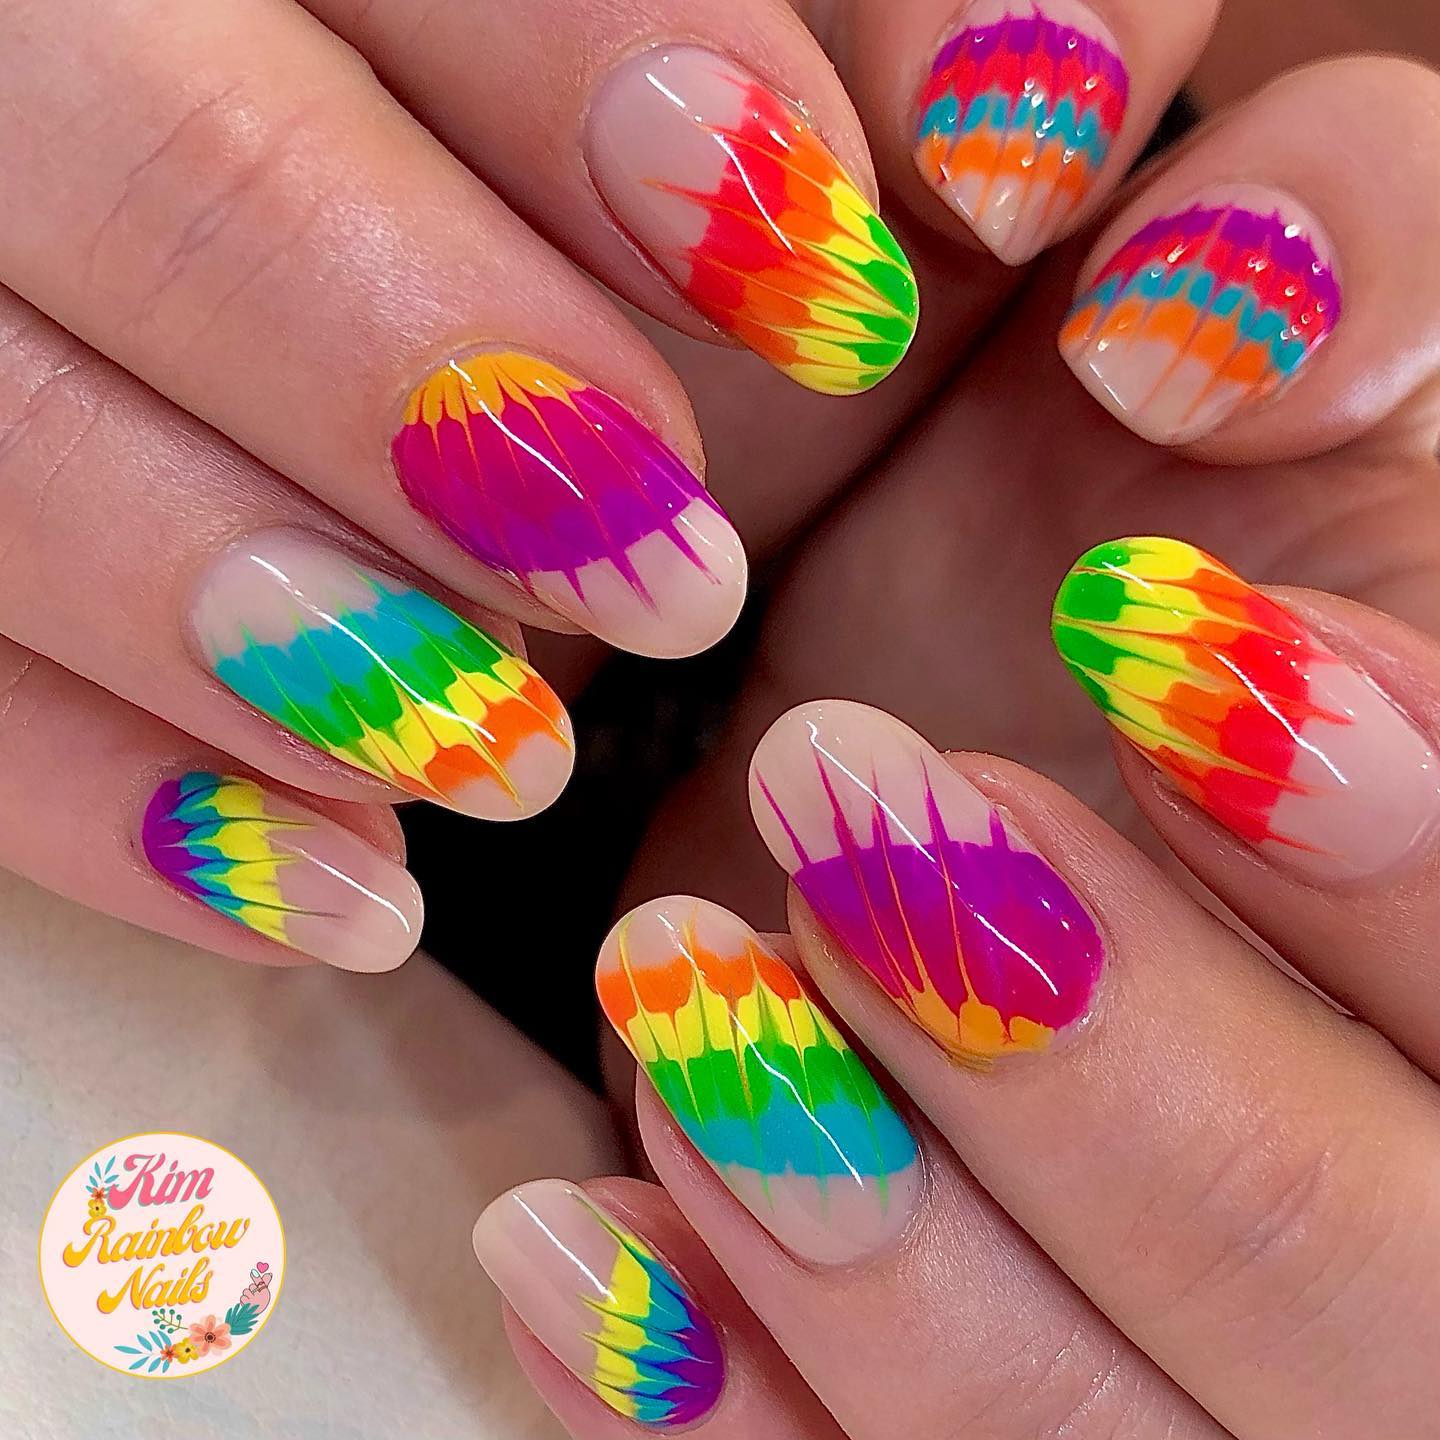 Round Nails with Rainbow Splash Design